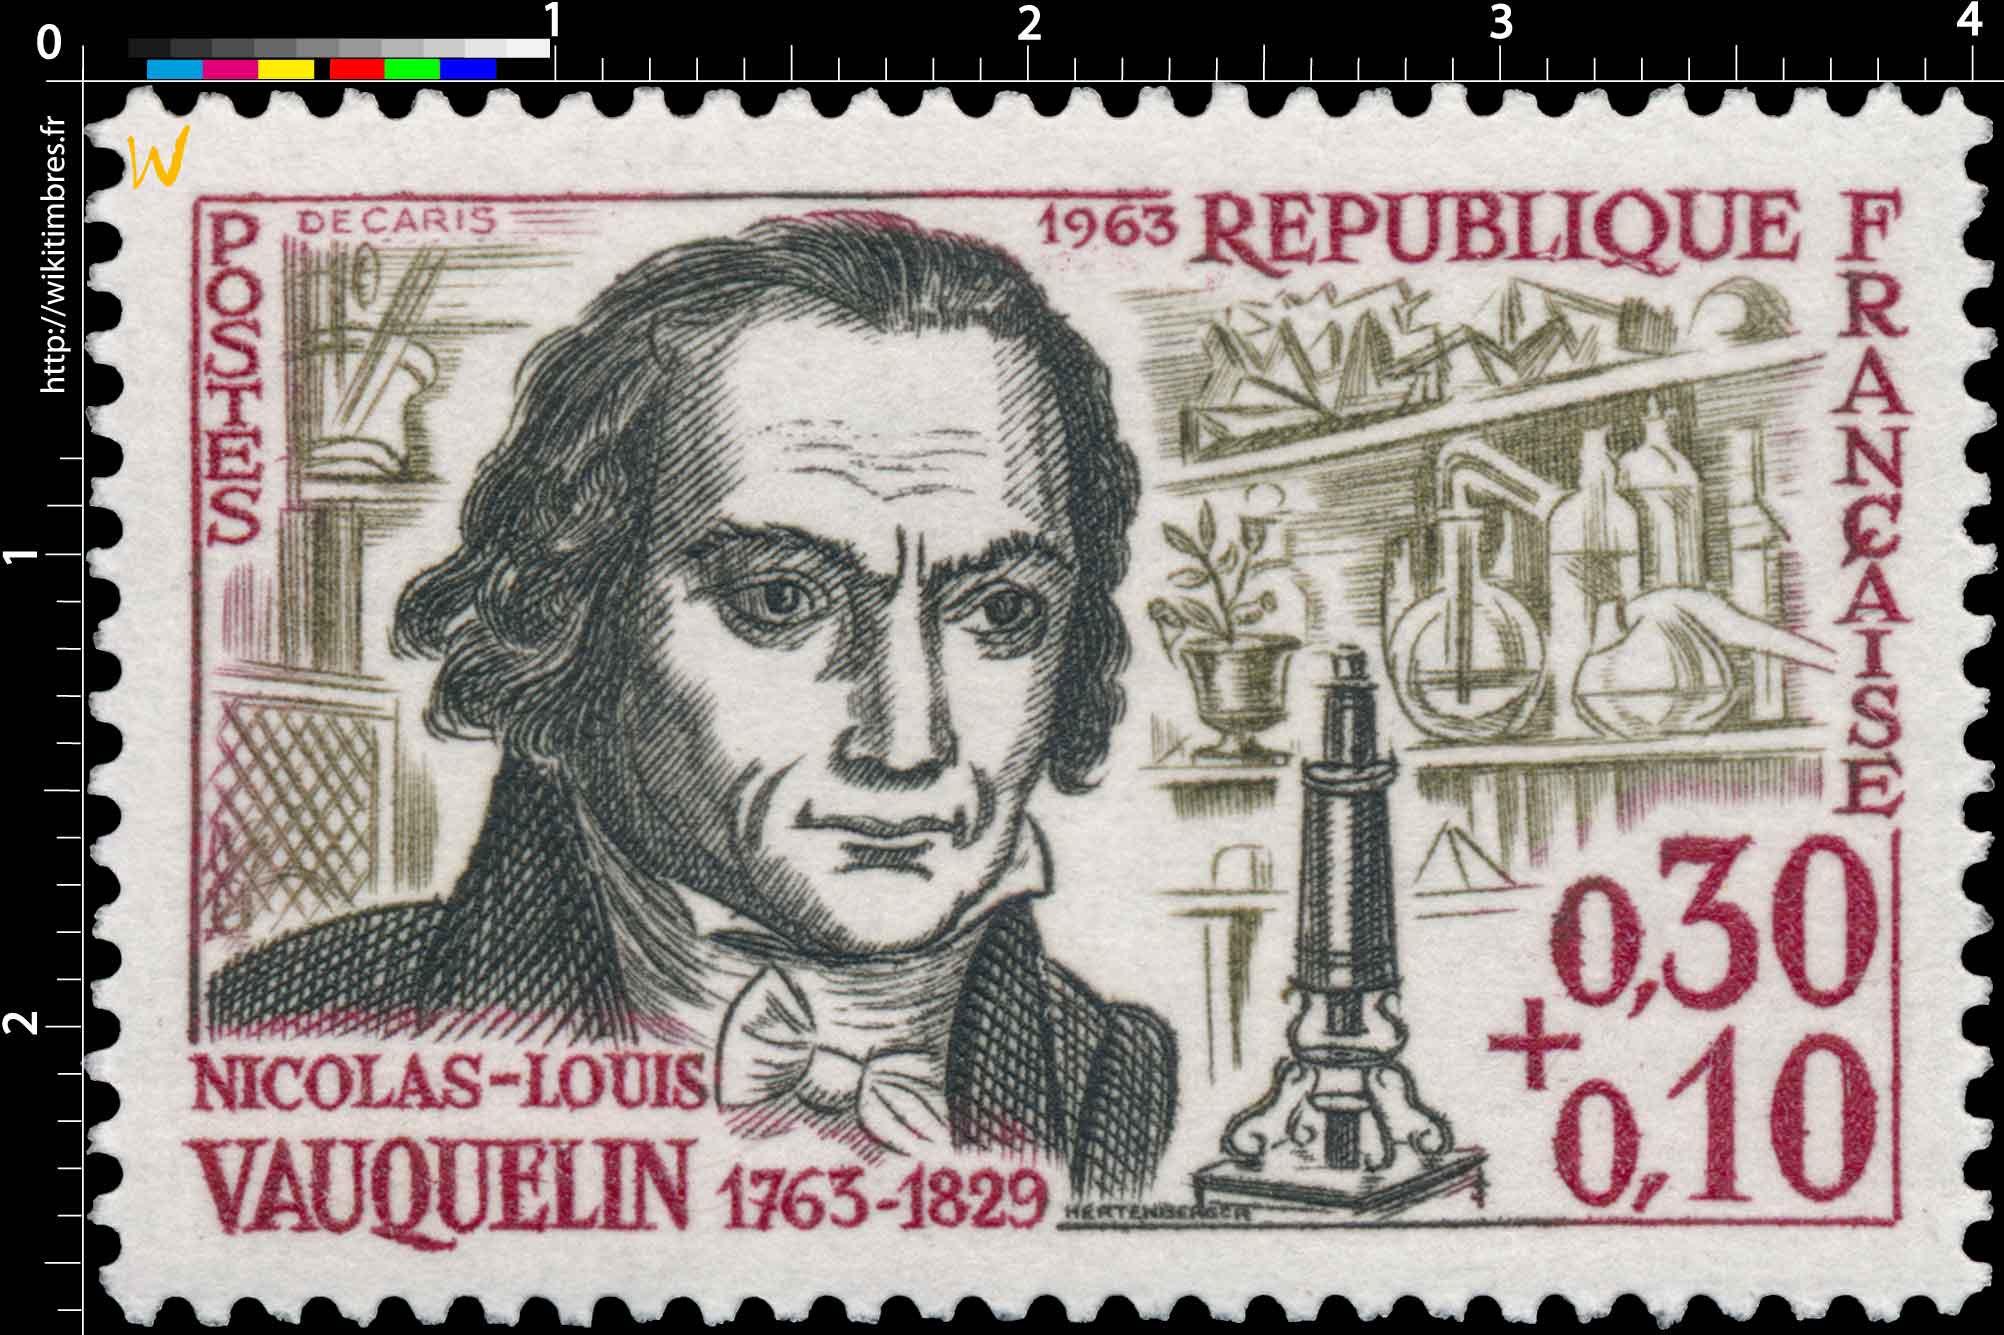 1963 NICOLAS-LOUIS VAUQUELIN 1763-1829